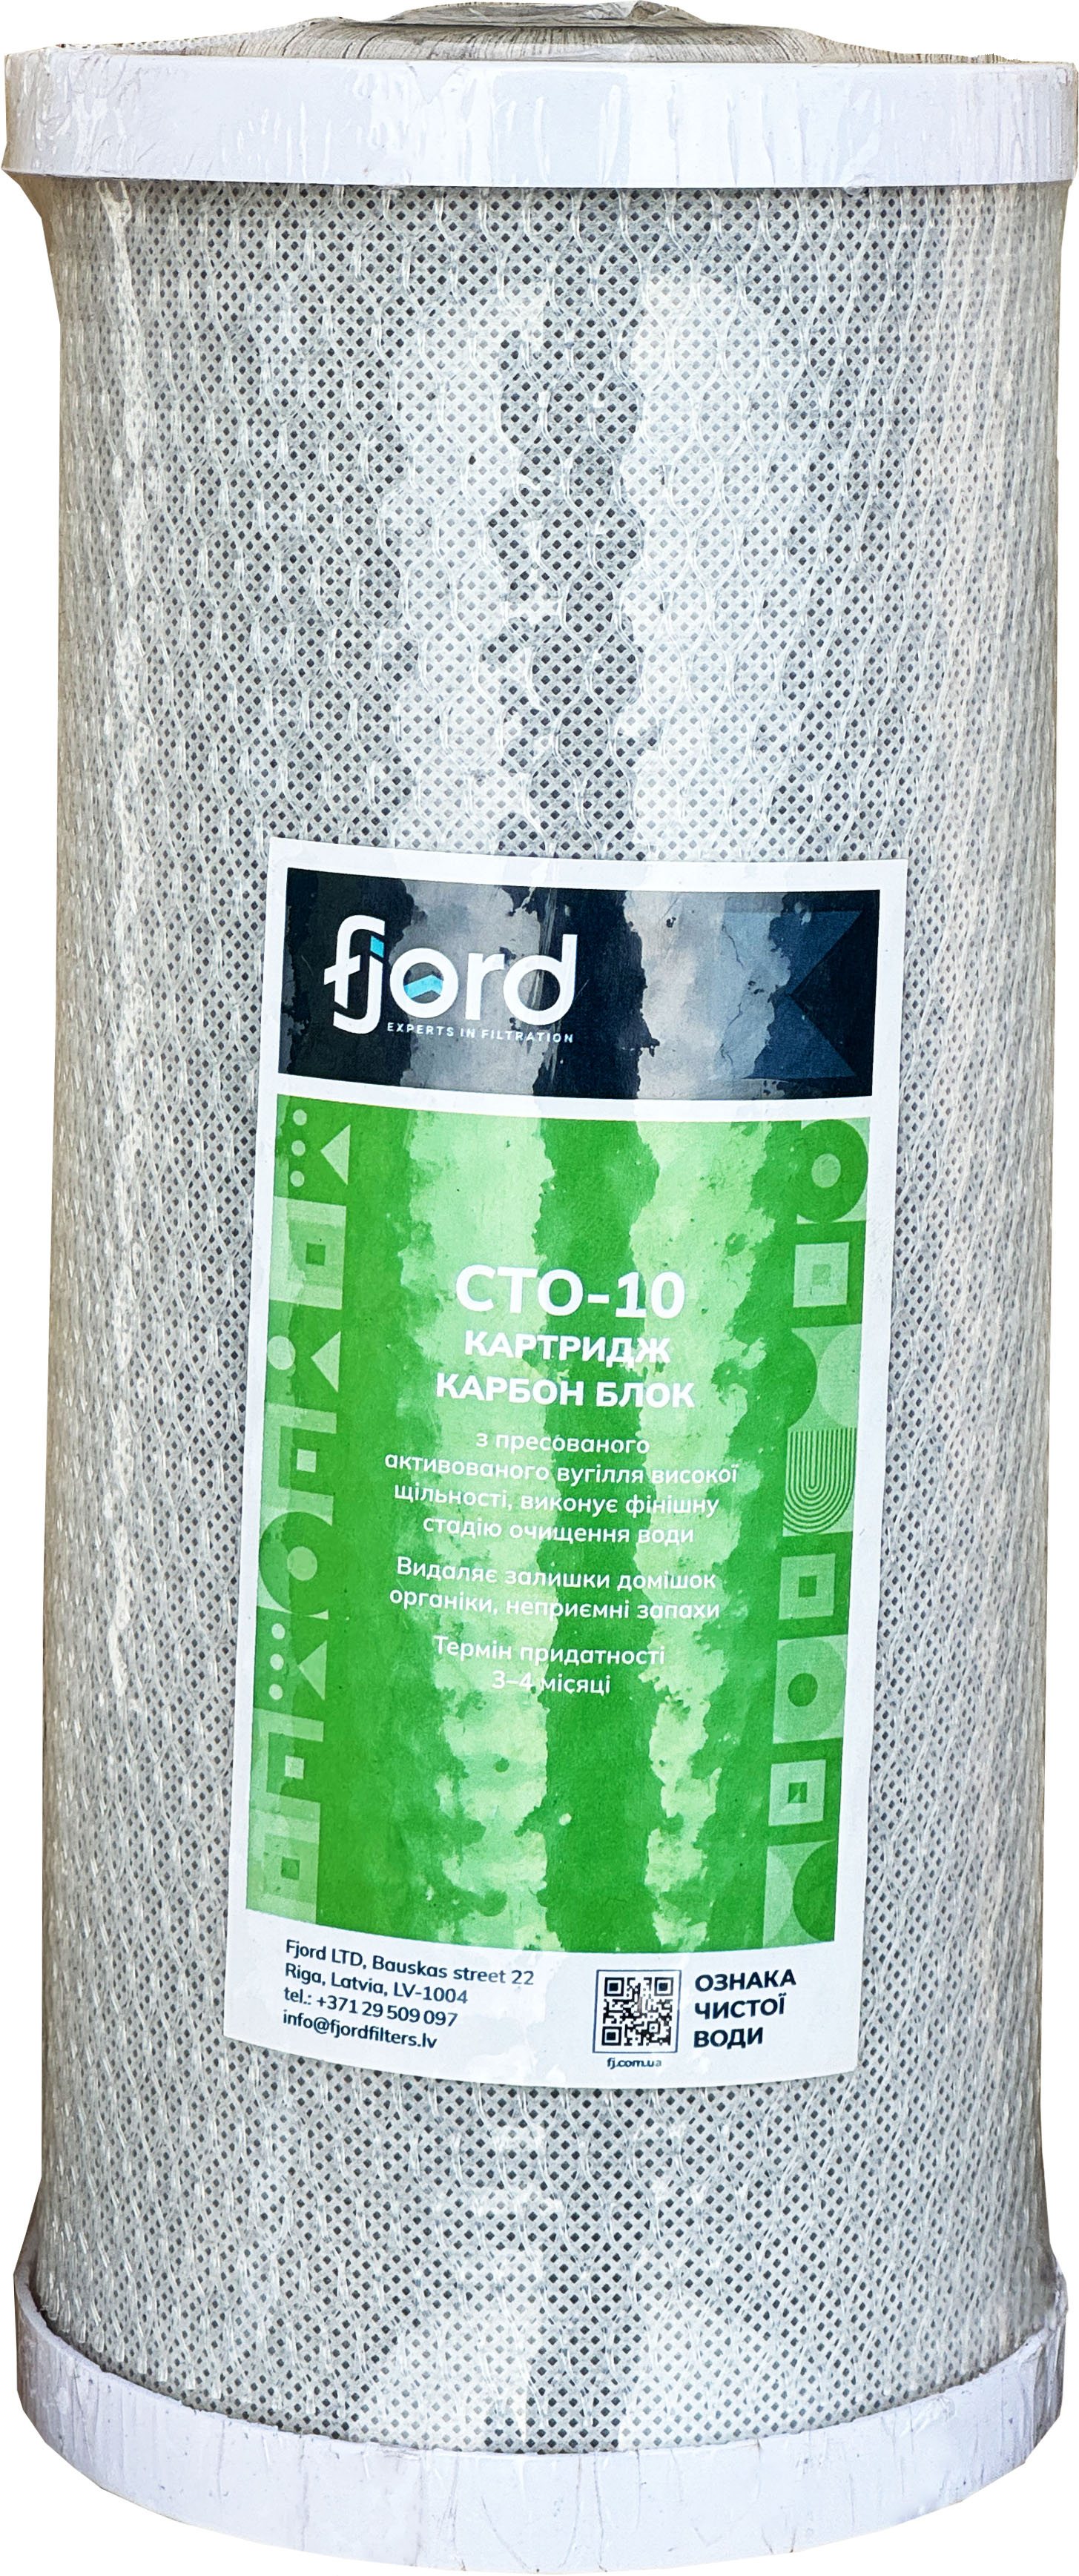 Картридж для фільтру Fjord CTO-BB10 (вугілля) в інтернет-магазині, головне фото